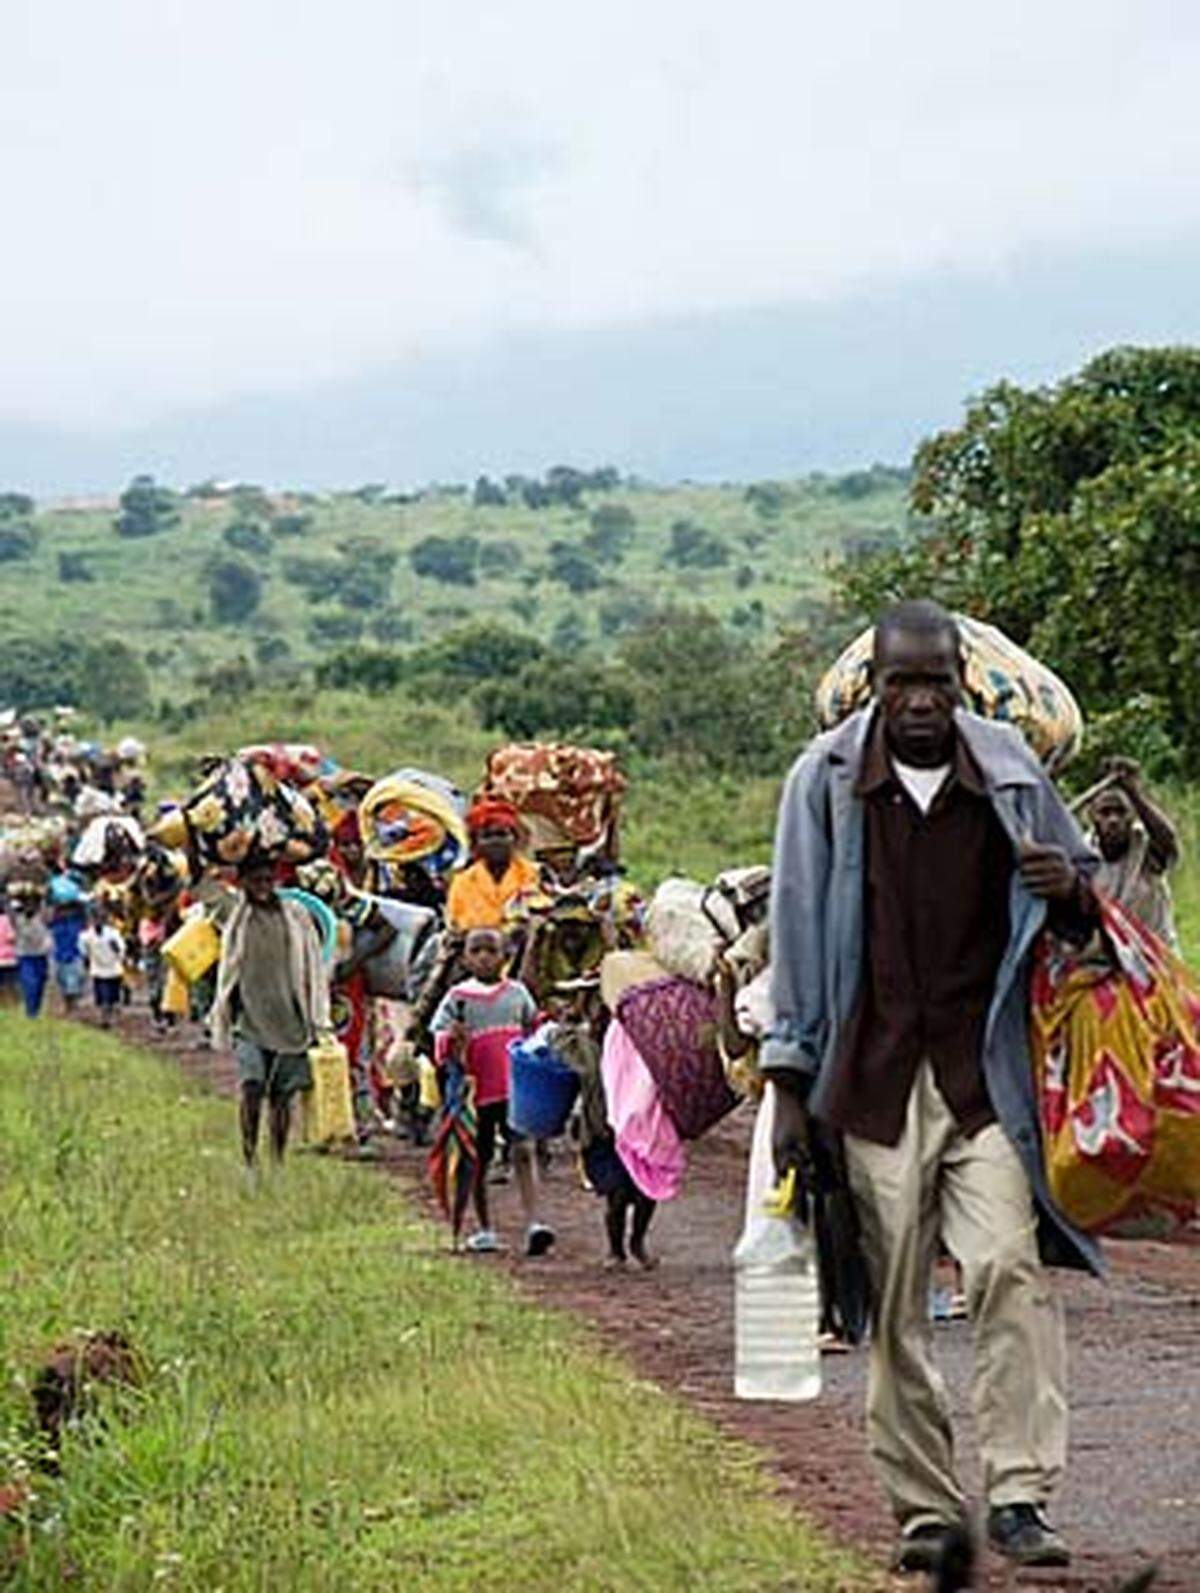 Die neuerlichen Kämpfe haben die beschränkten Fortschritte im Friedensprozess des Kongo wieder deutlich gemacht. Im Jänner 2008 hatten Regierung und Rebellen ein Friedensabkommen unterzeichnet. Es sah als ersten Schritt die räumliche Trennung der Konfliktparteien durch einen von der UN-Mission überwachten Korridor vor.  Freie Wahlen im Jahr 2006 und eine Flut von Investoren, vor allem im Bergbau- und Öl-Sektor hatten einen Hoffnungsschimmer für das rohstoffreiche Land geweckt.